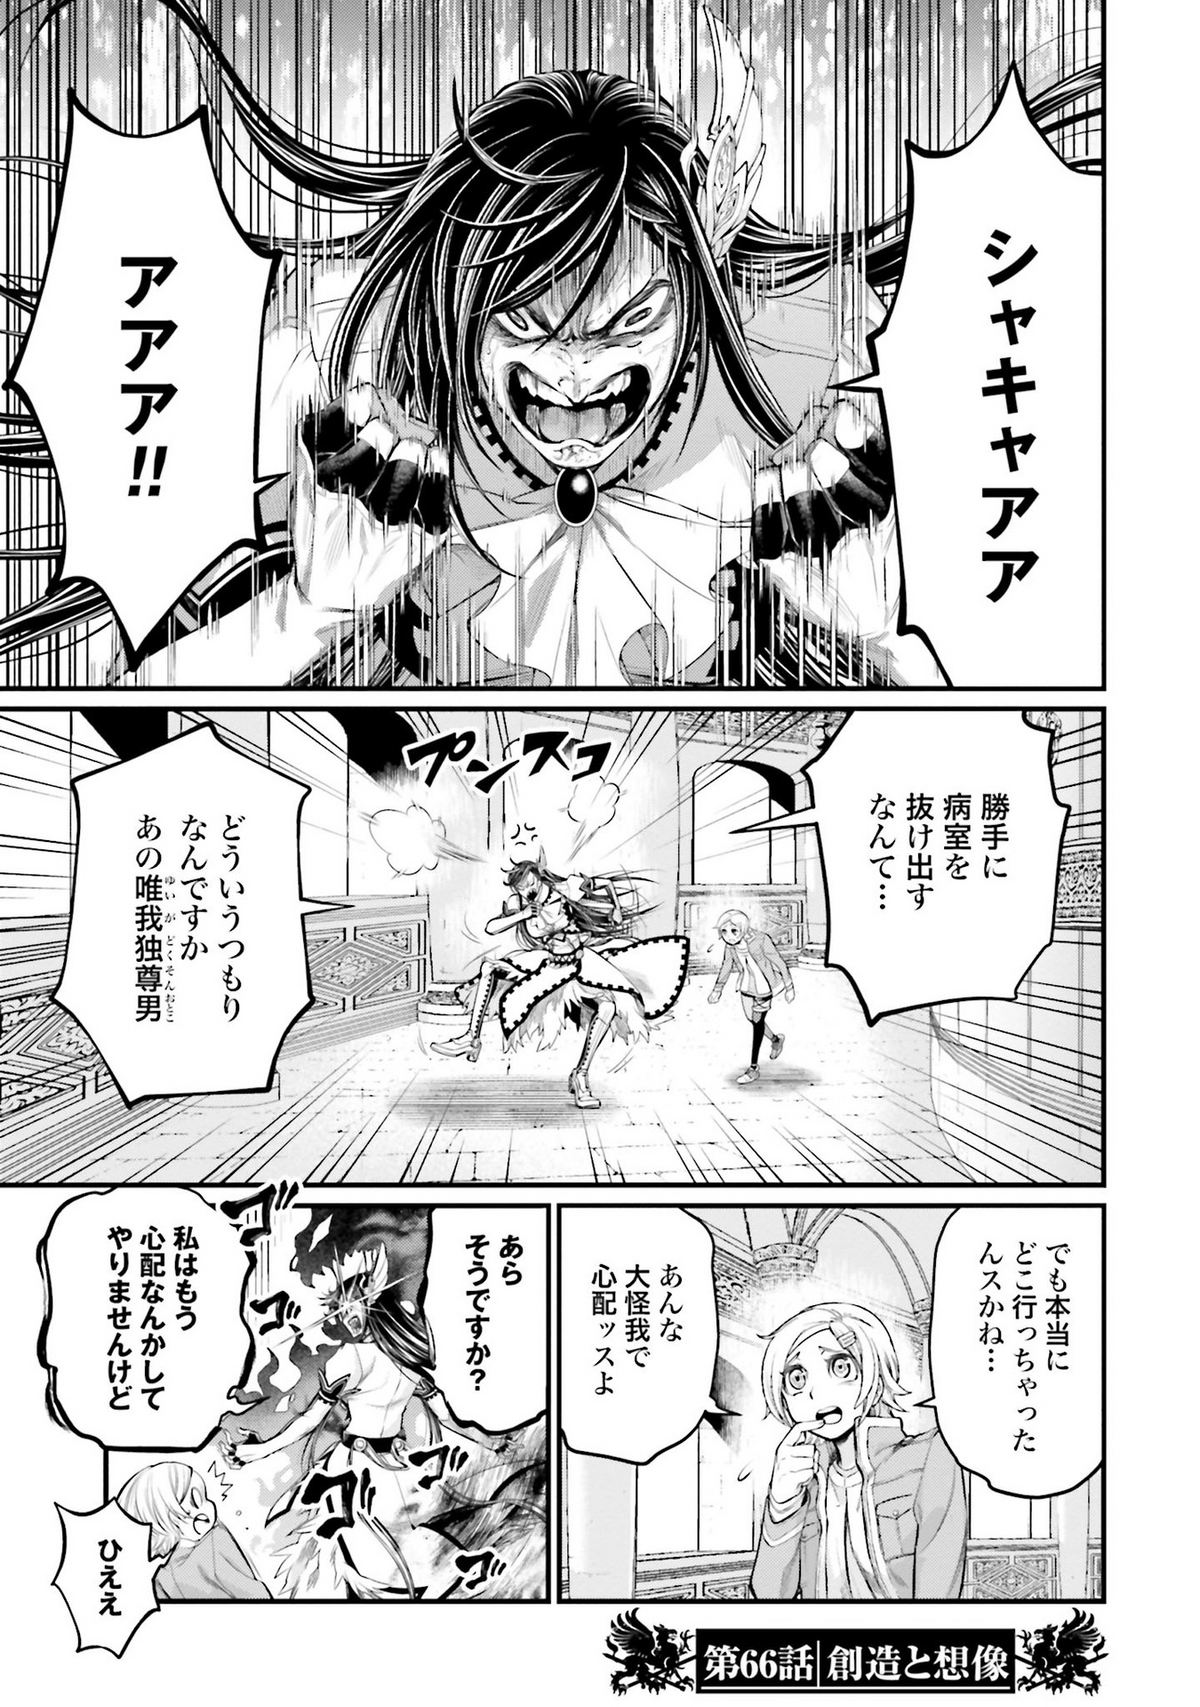 Capítulo 47 de Shuumatsu no Valkyrie: Data de Lançamento - Manga